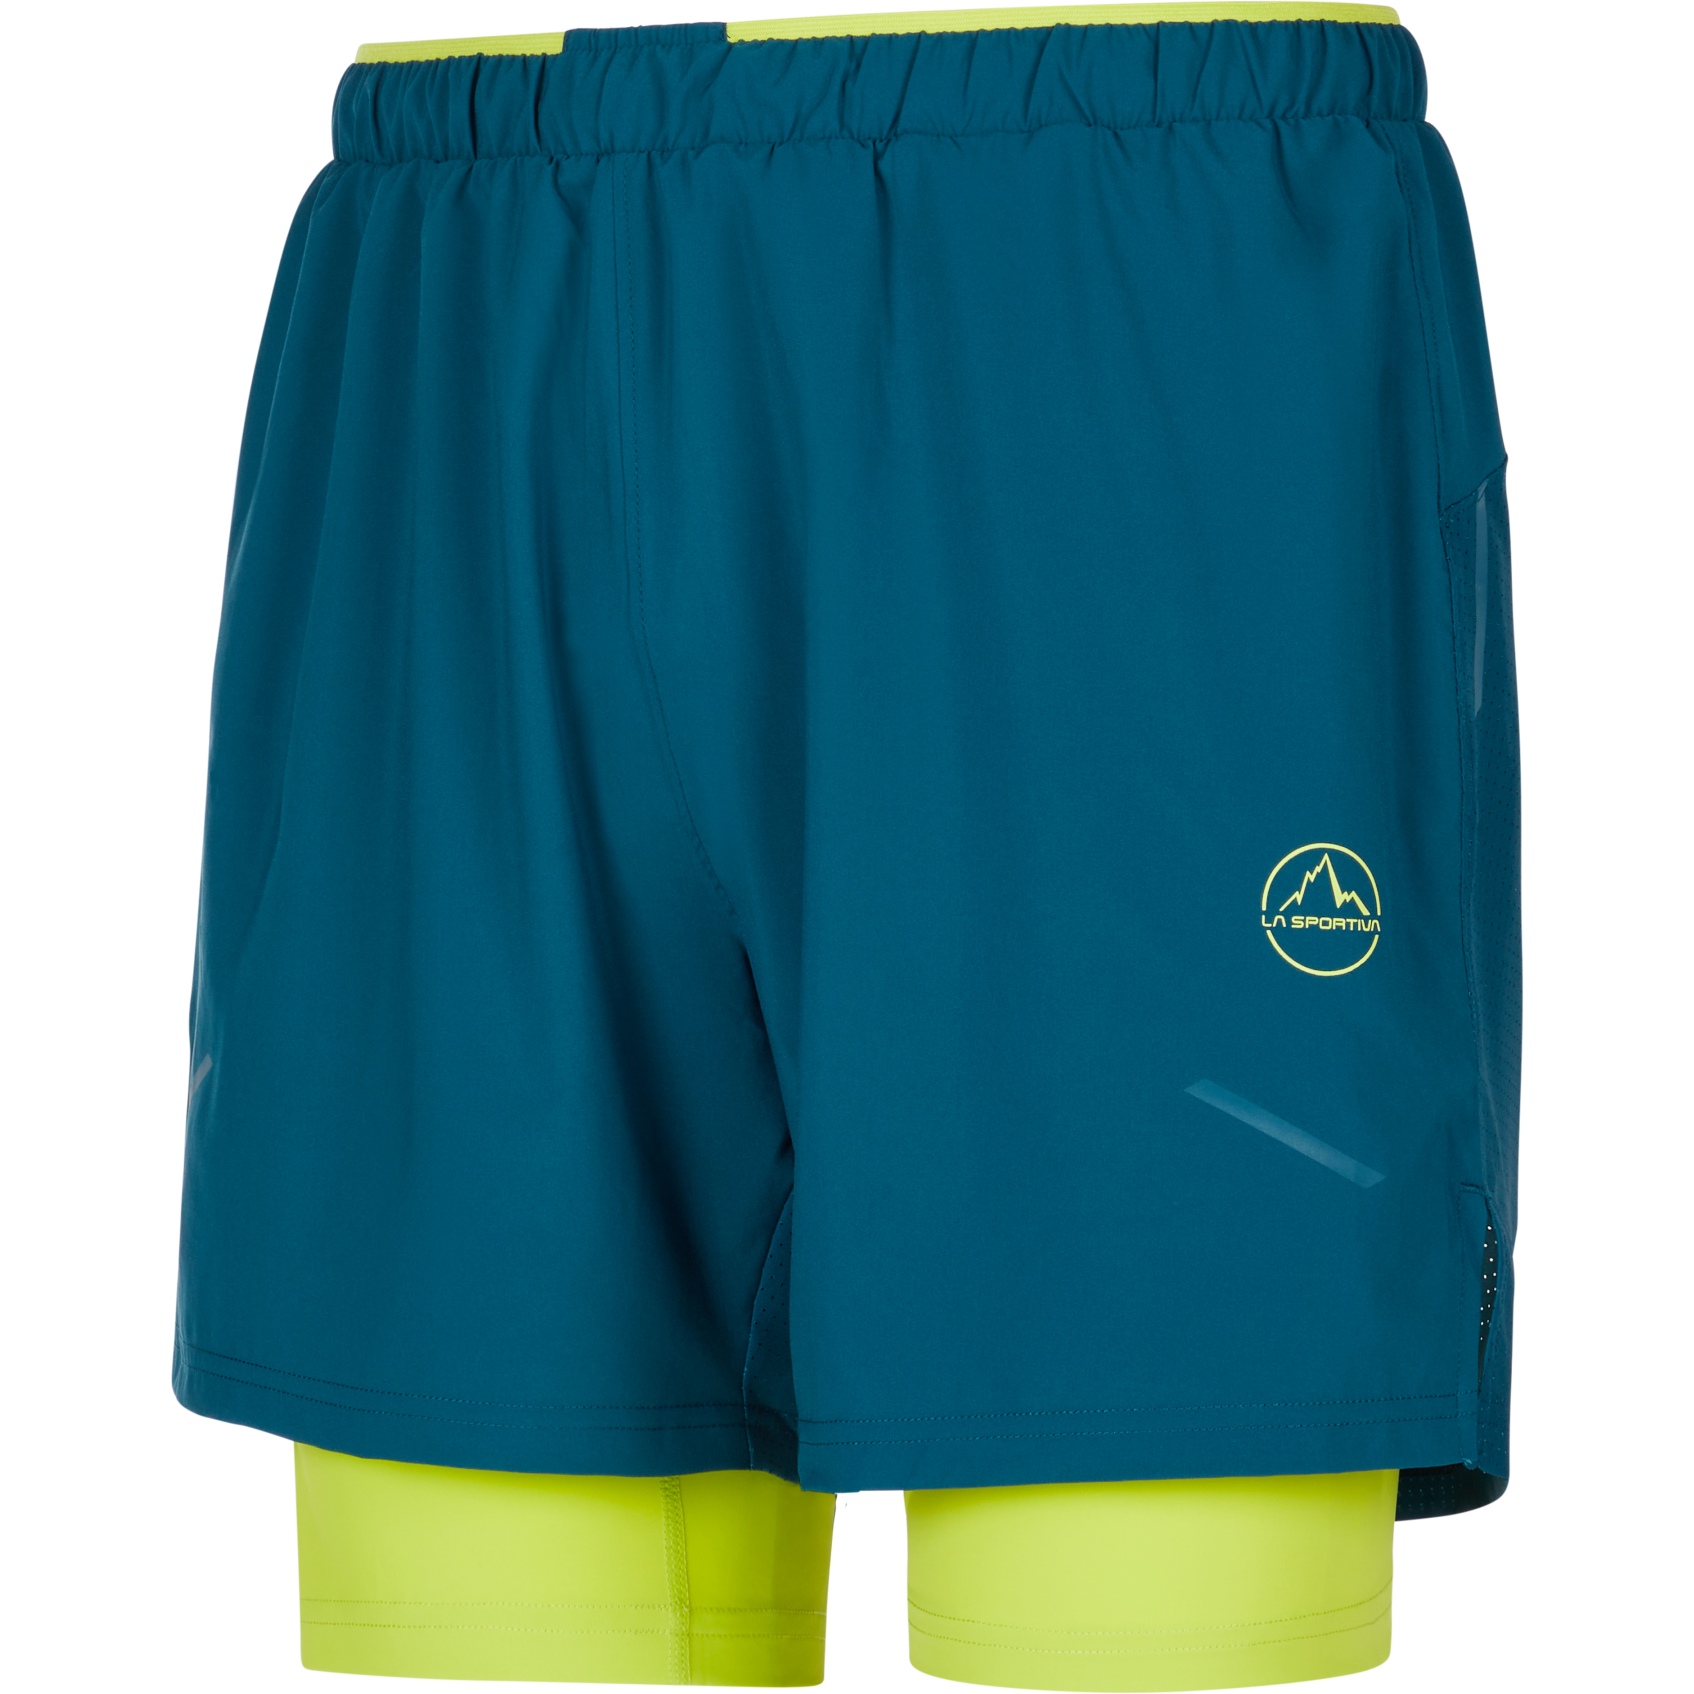 Produktbild von La Sportiva Trail Bite Shorts Herren - Storm Blue/Lime Punch